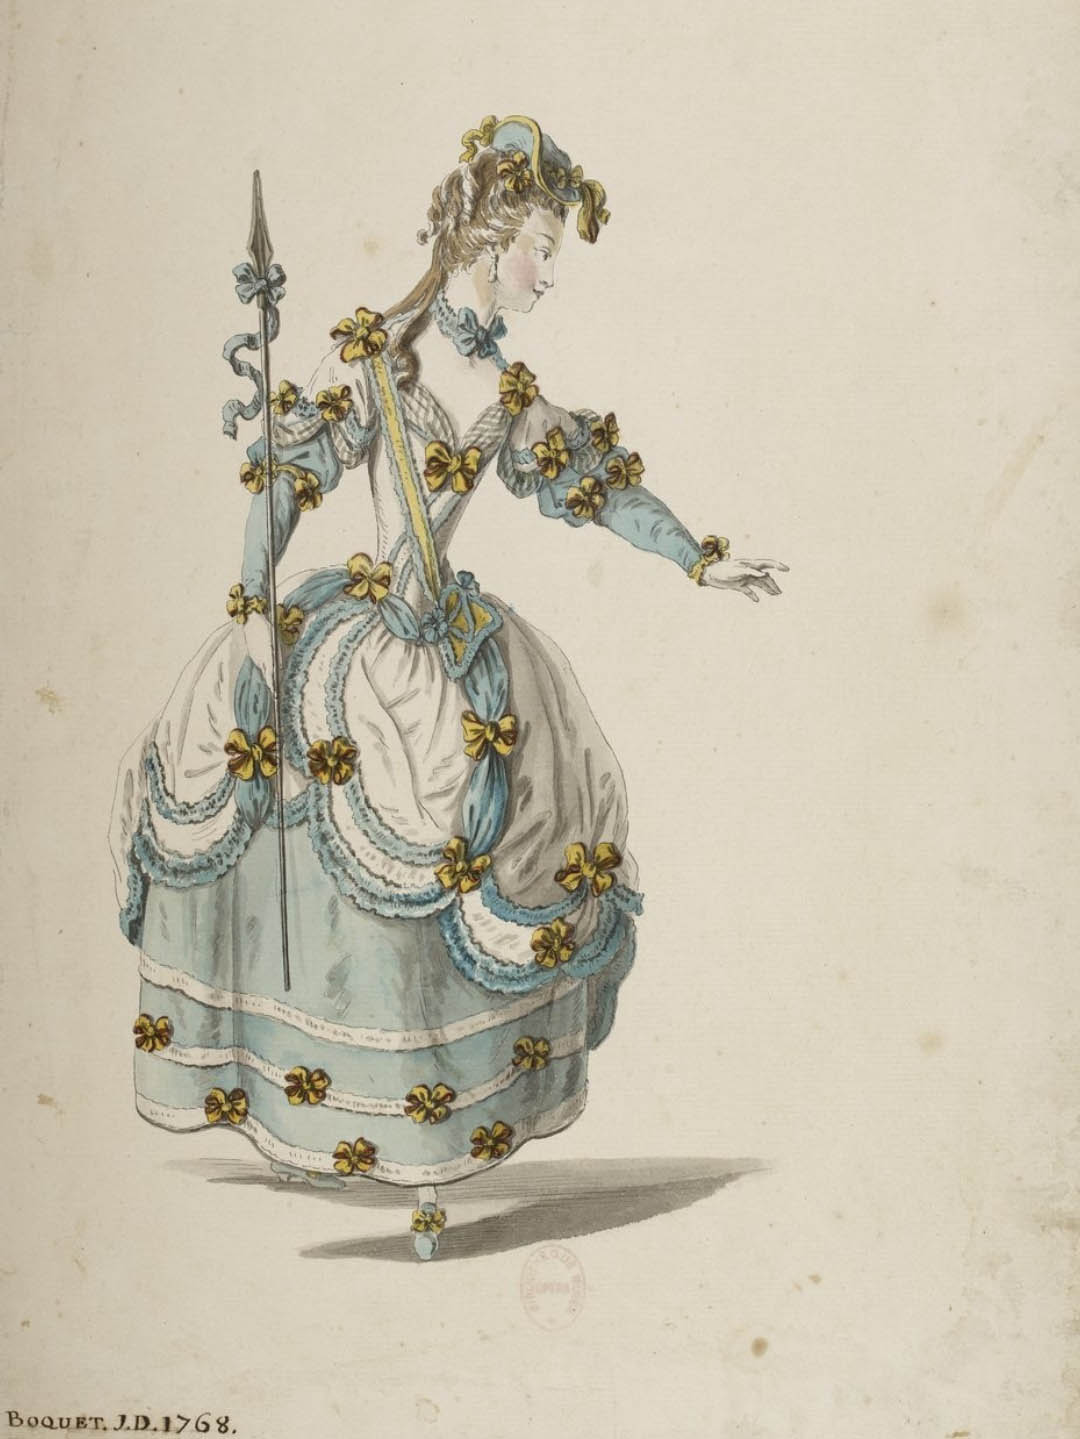 Costume de bergère par Louis-René BOQUET, 1768 (source Gallica, BNF.FR